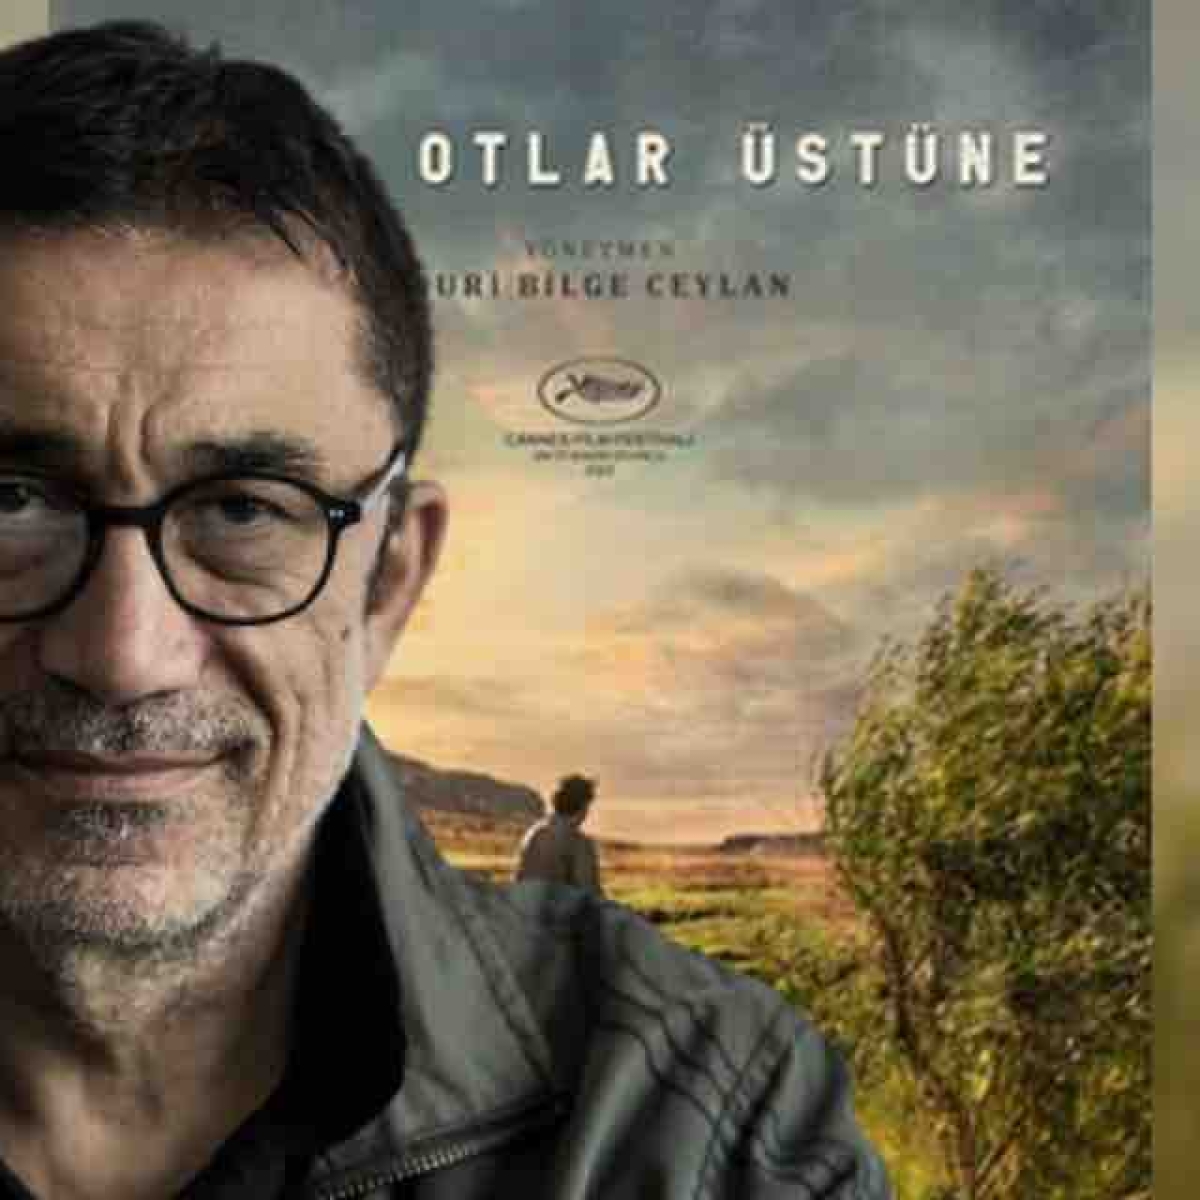 'Kuru Otlar Üstüne' Filmi Türkiye'nin En Pahalı Sinema Bileti Oldu! İşte Nedeni! 